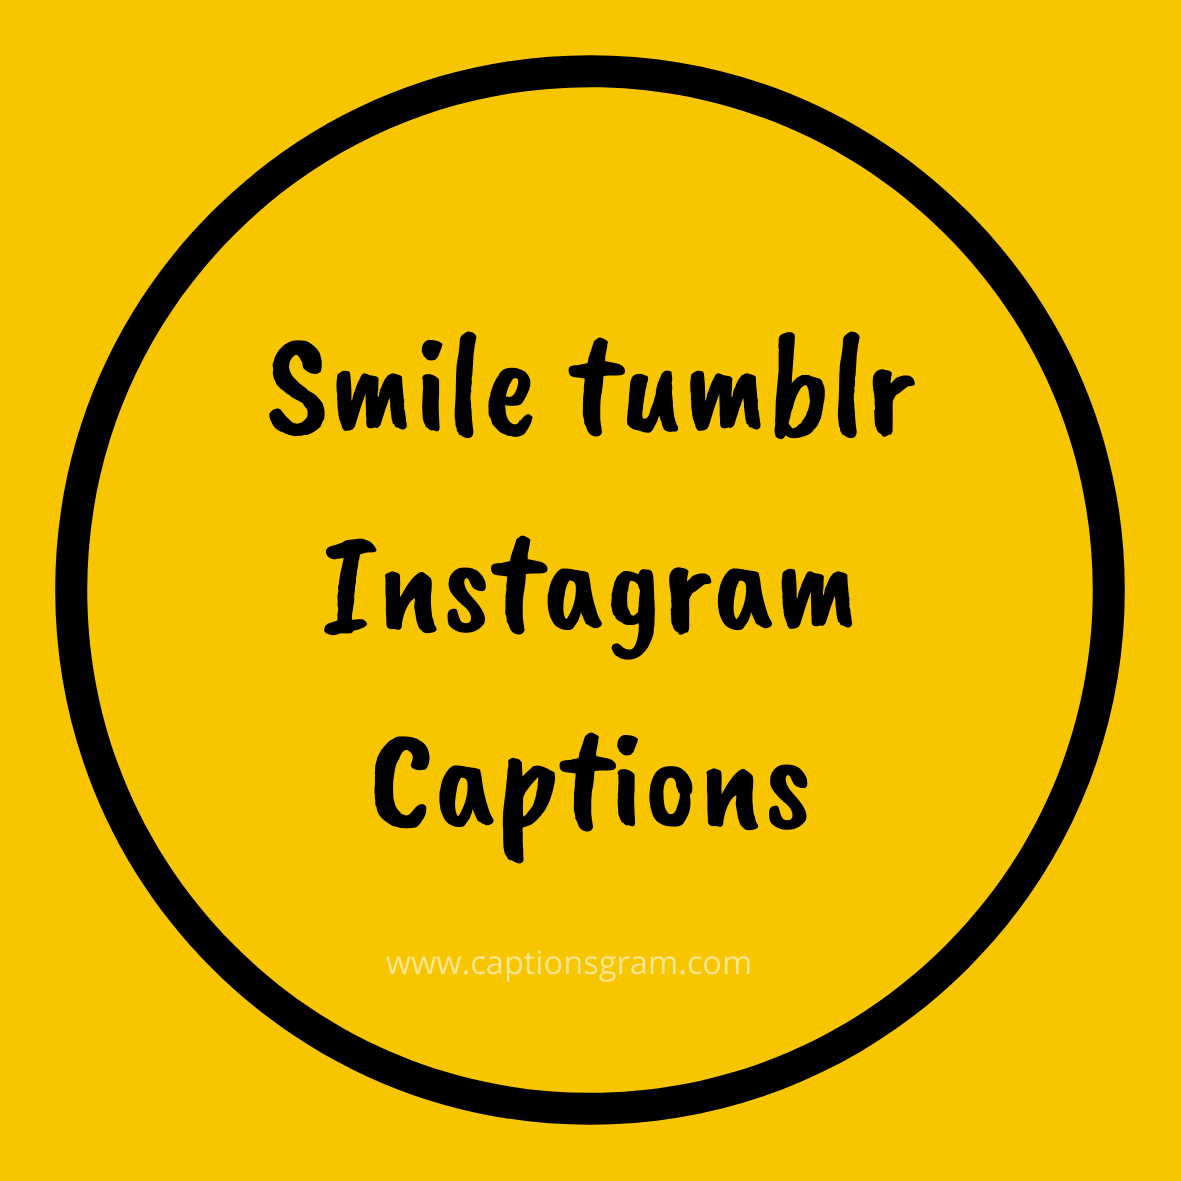 Instagram captions tumblr